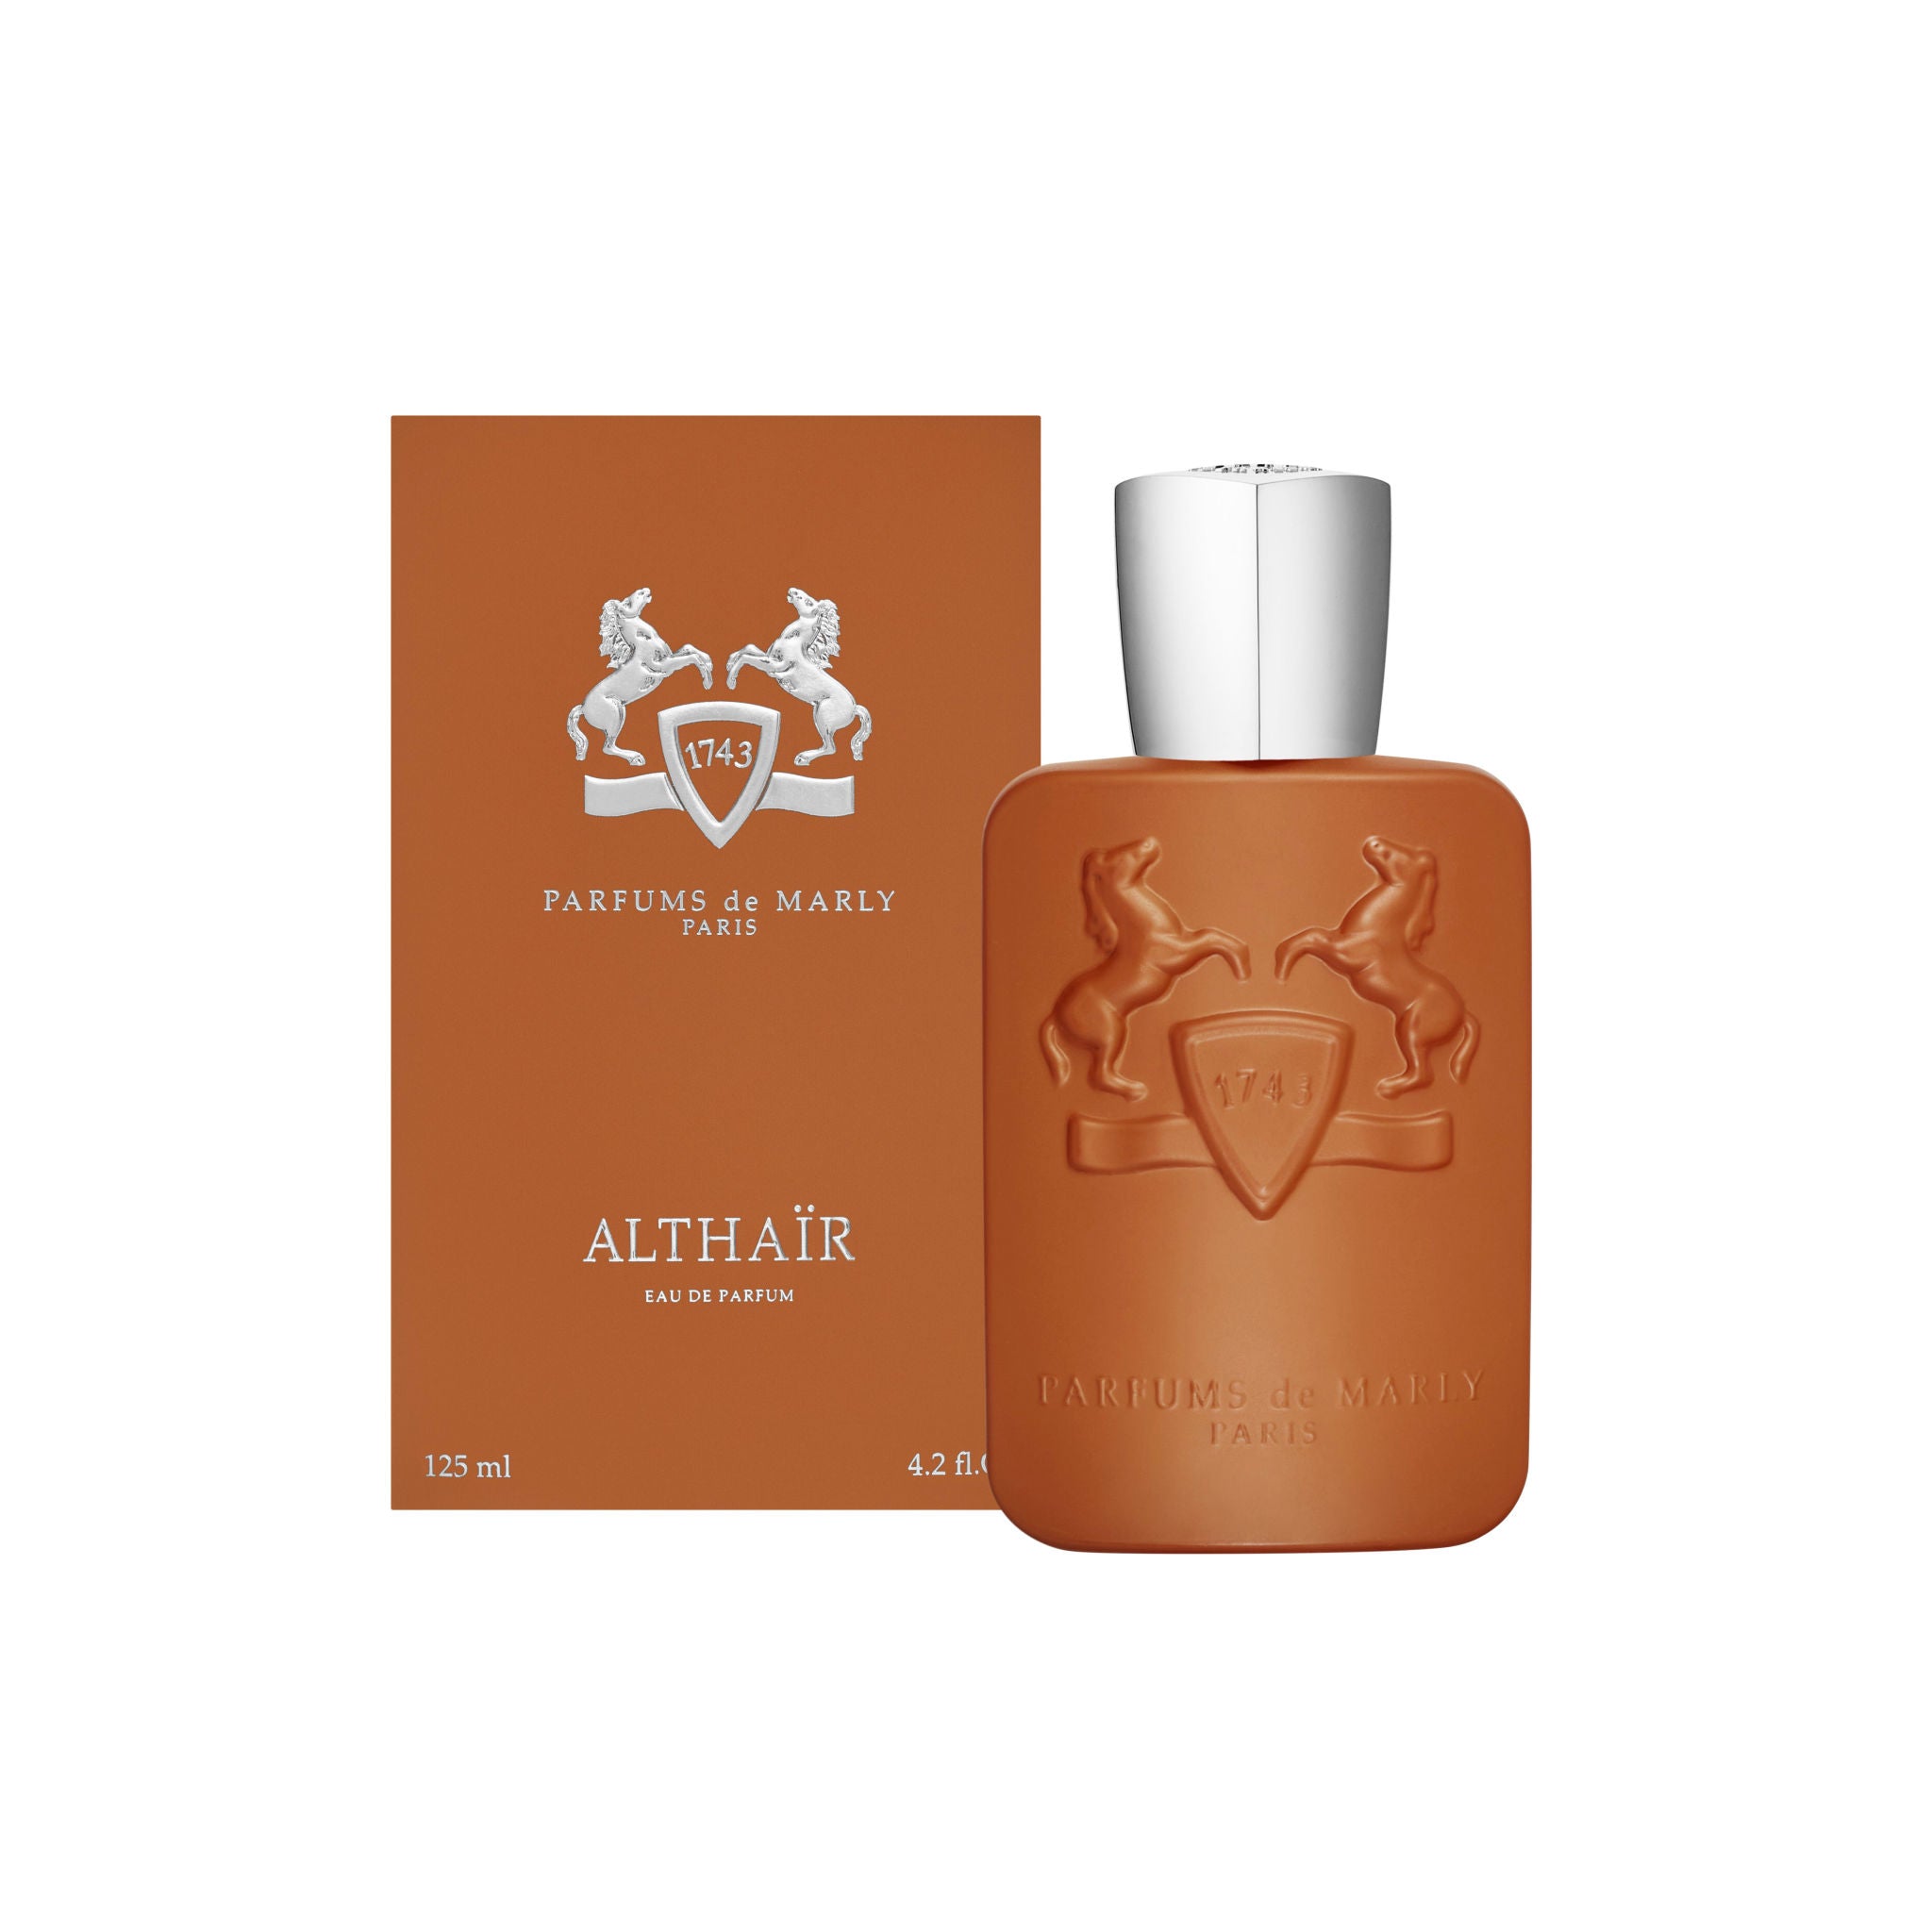 Parfums de Marly Althair Eau de Parfum Size variant: 4.2 fl oz main image.